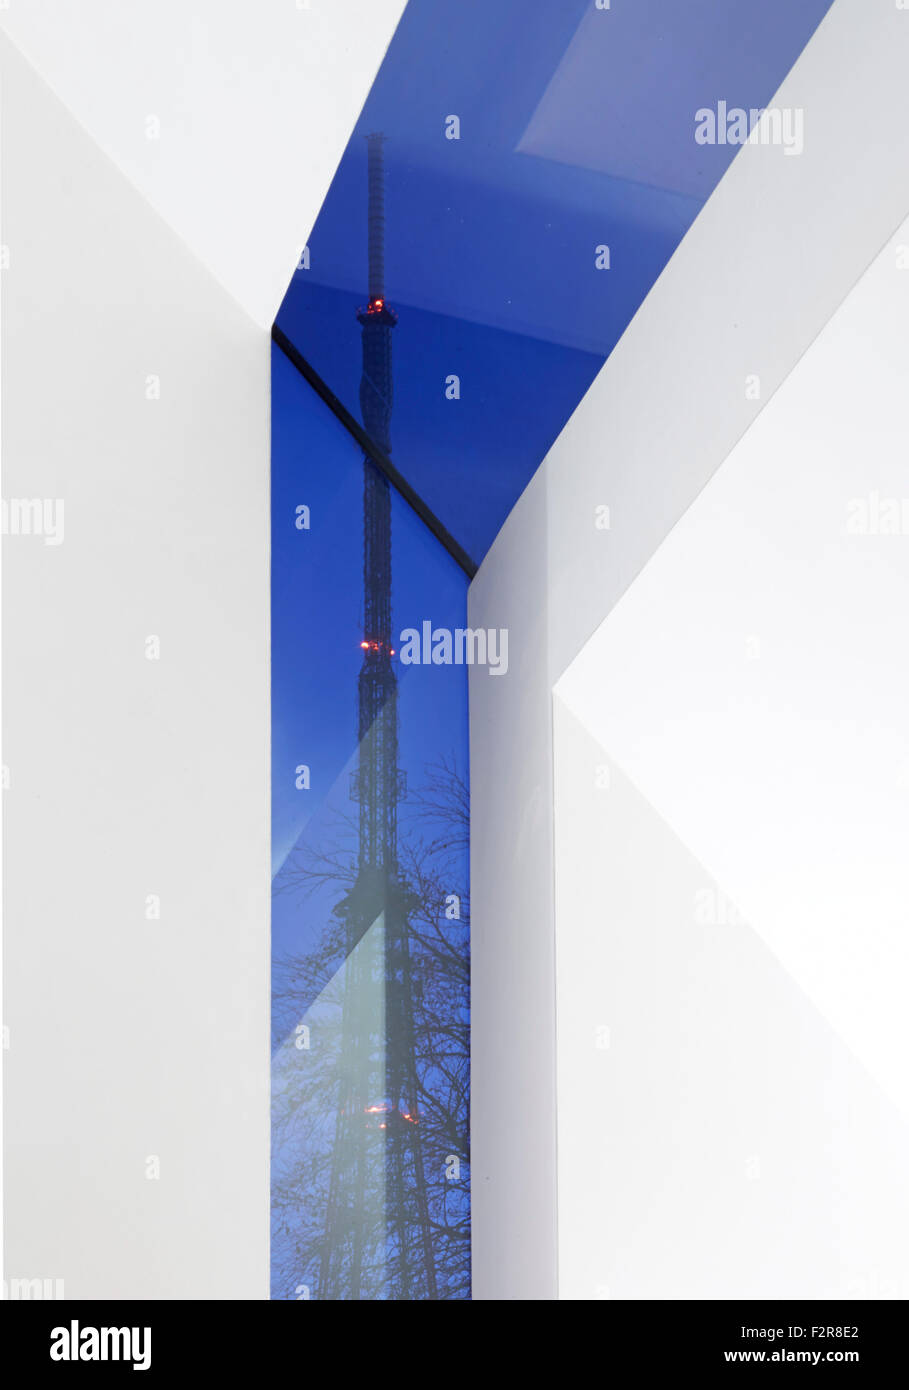 Crystal Palace Tower durch Fenster umrahmt. Das Coach House, London, Vereinigtes Königreich. Architekt: John Smart Architekten, 2014. Stockfoto